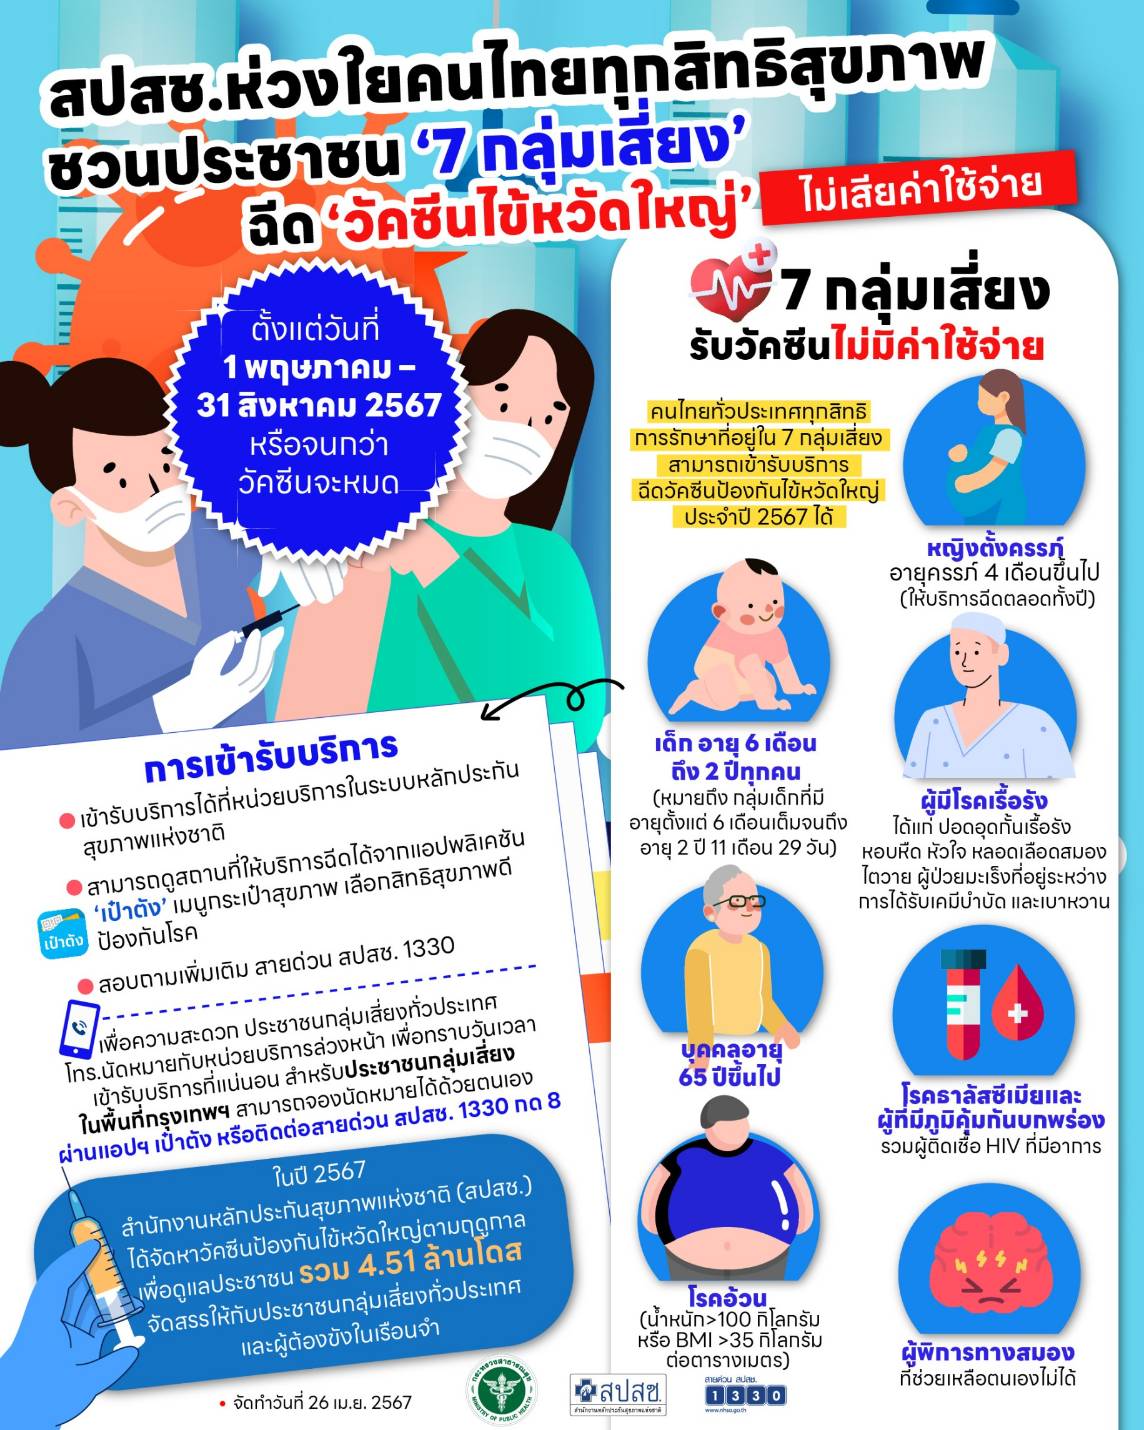 สปสช.ห่วยใยดูแลสุขภาพคนไทย 7 กลุ่มเสี่ยง ฉีดวัคซีนไข้หวัดใหญ่ 